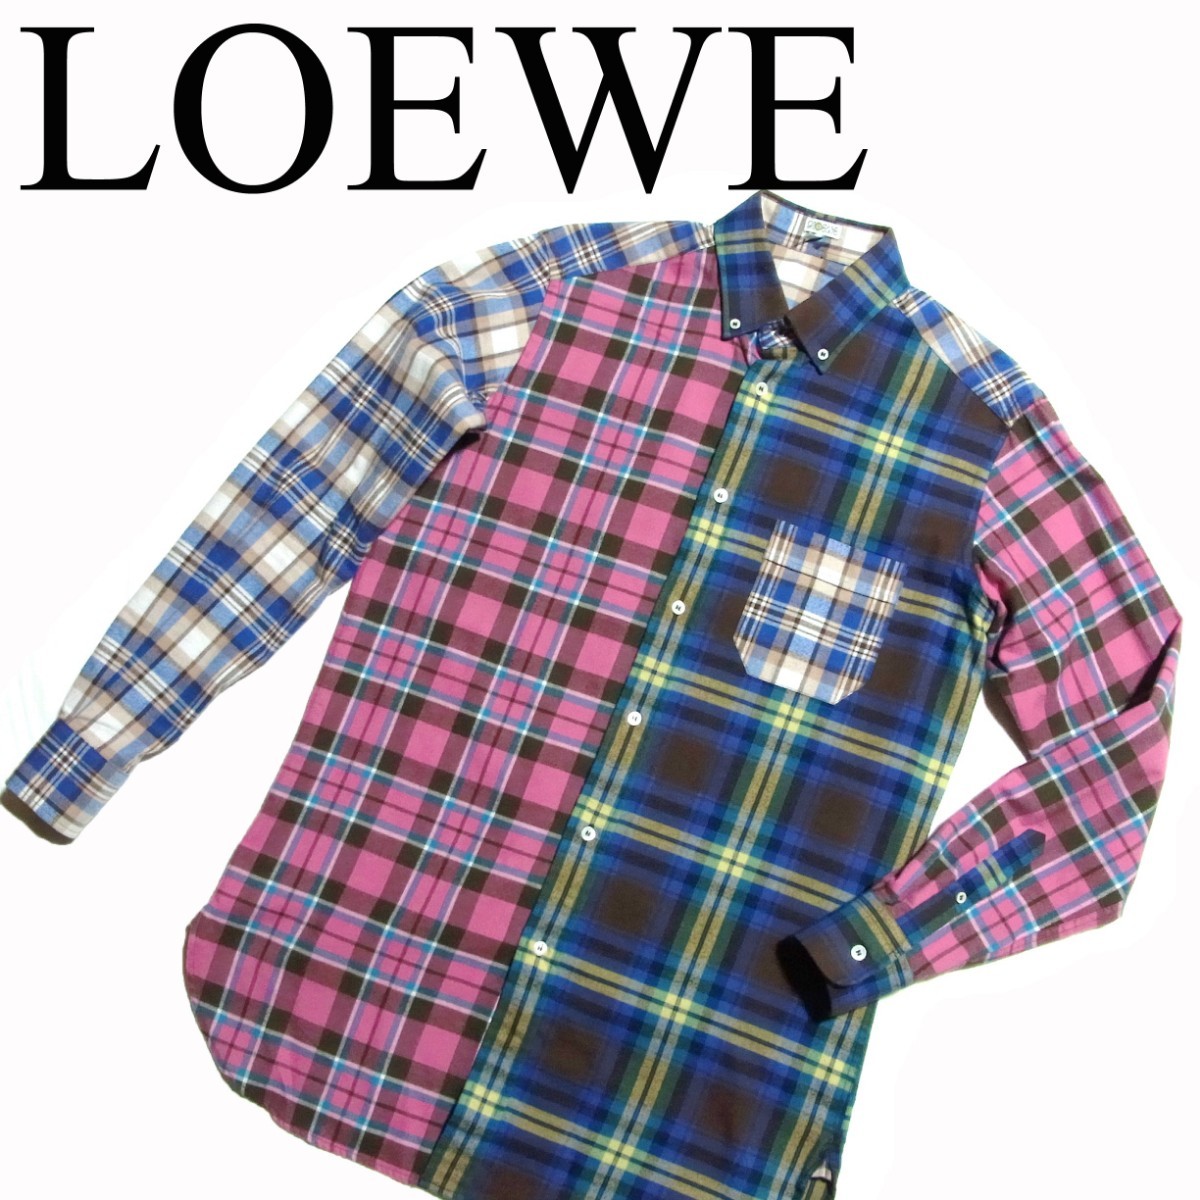 LOEWE ロエベ パッチワーク チェック シャツ ネルシャツ S マルチカラー 国内正規品